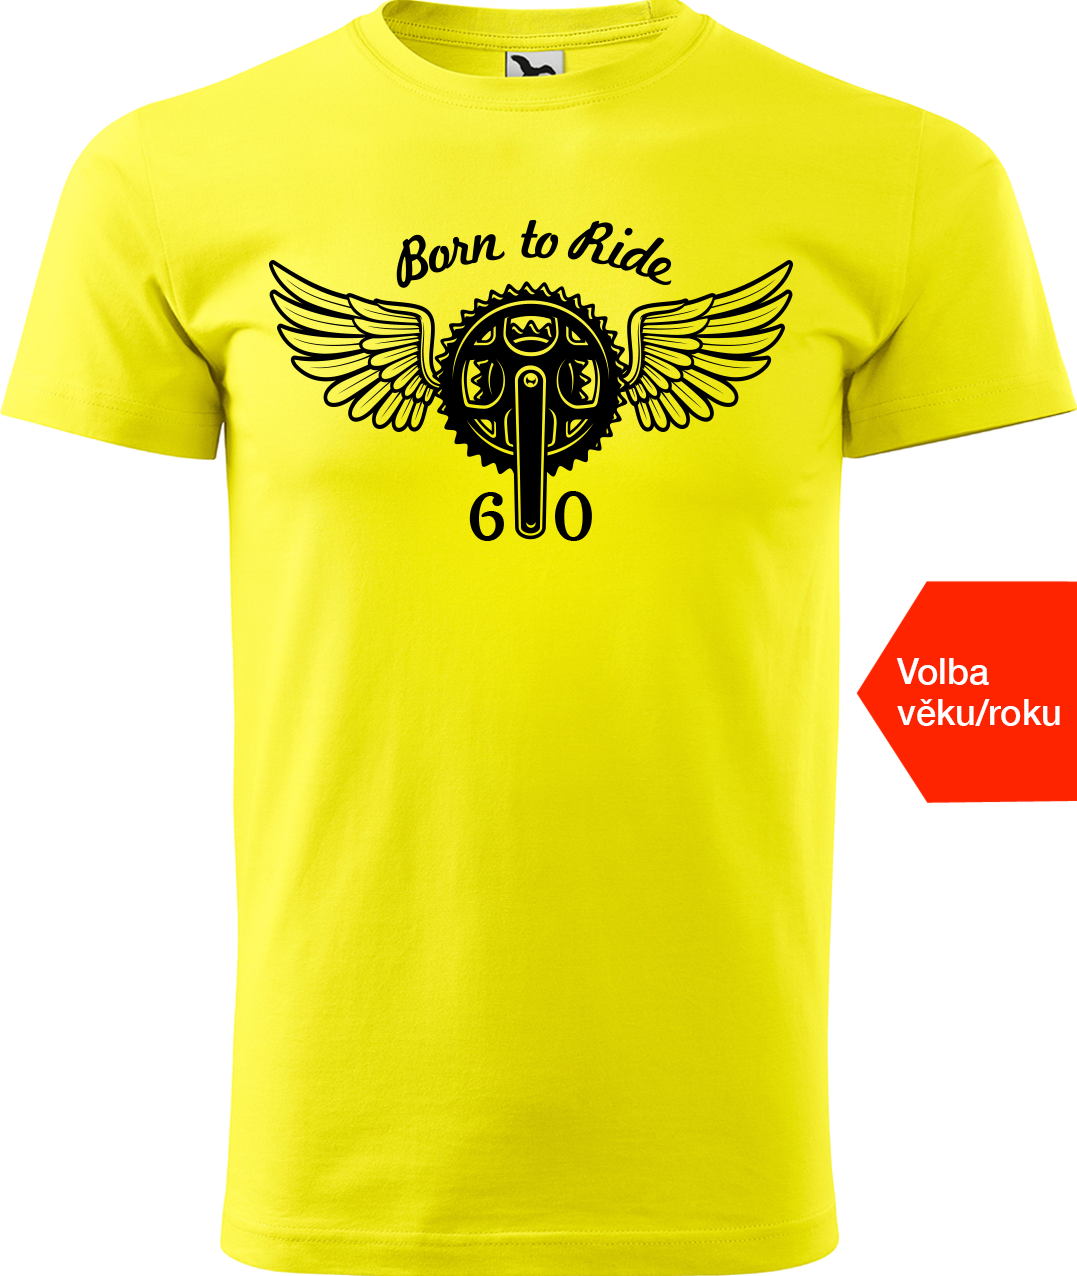 Pánské tričko pro cyklistu s věkem/rokem narození - Born to Ride (převodník) Velikost: 3XL, Barva: Žlutá (04)